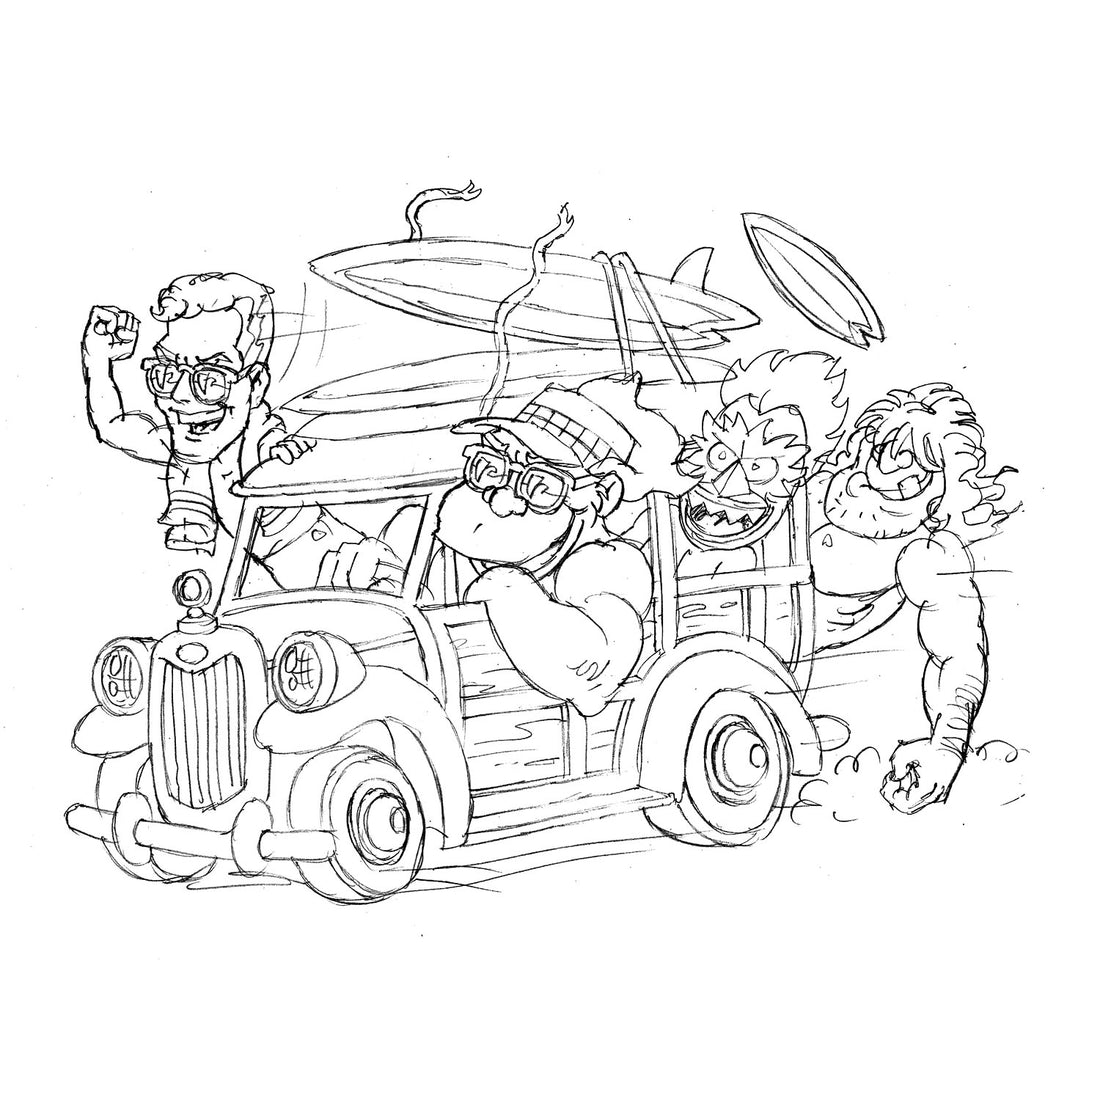 STEVE NAZAR'S DAILY DOODLE 6.5.18 - "Got a Wanderin' Woody"